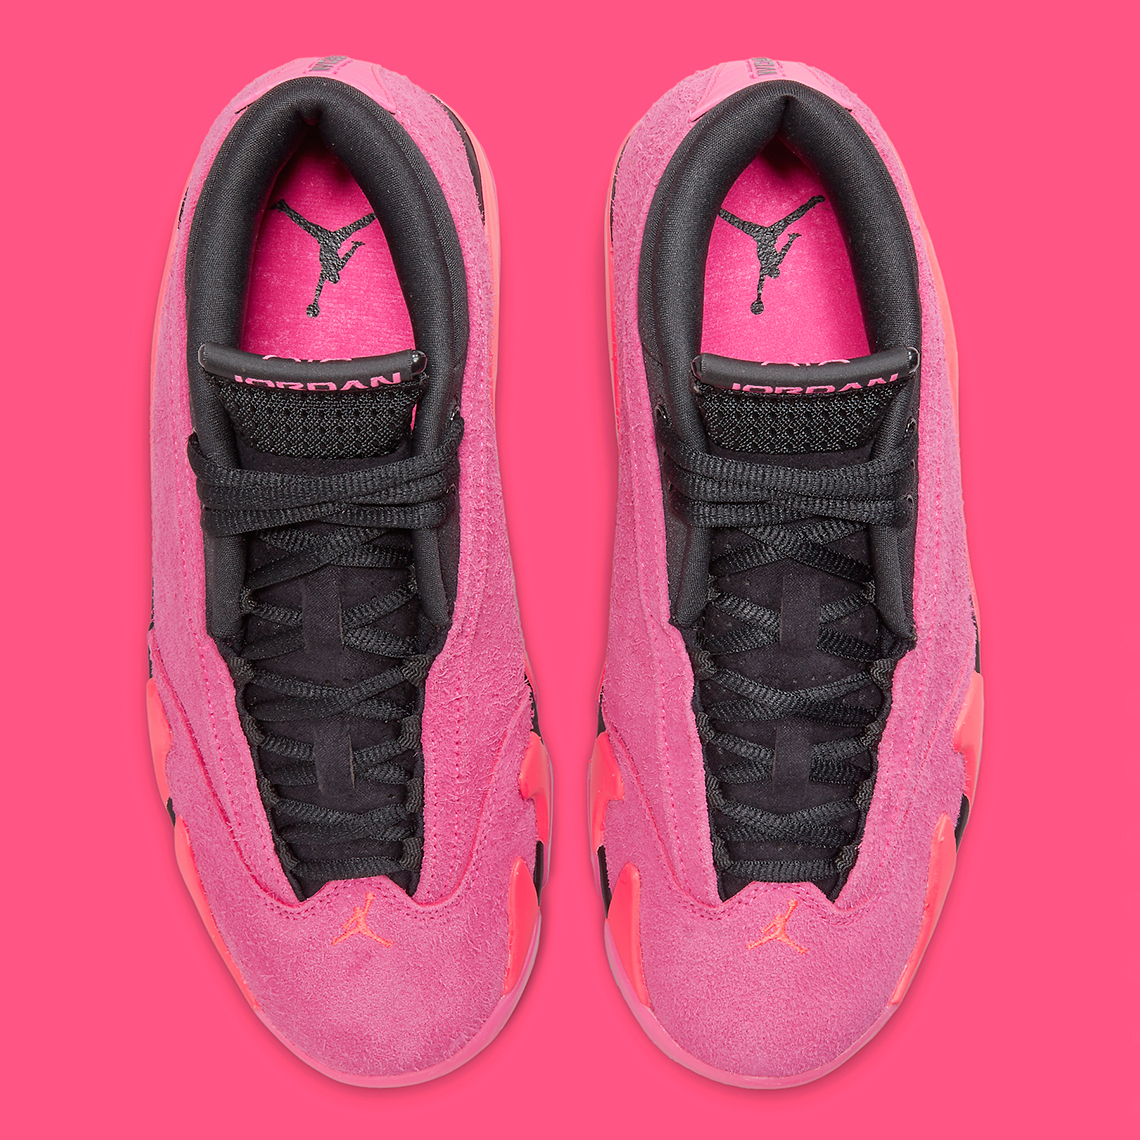 Air Jordan 14 Retro Low Shocking Pink DH4121-600 Size 7.5 Women’s